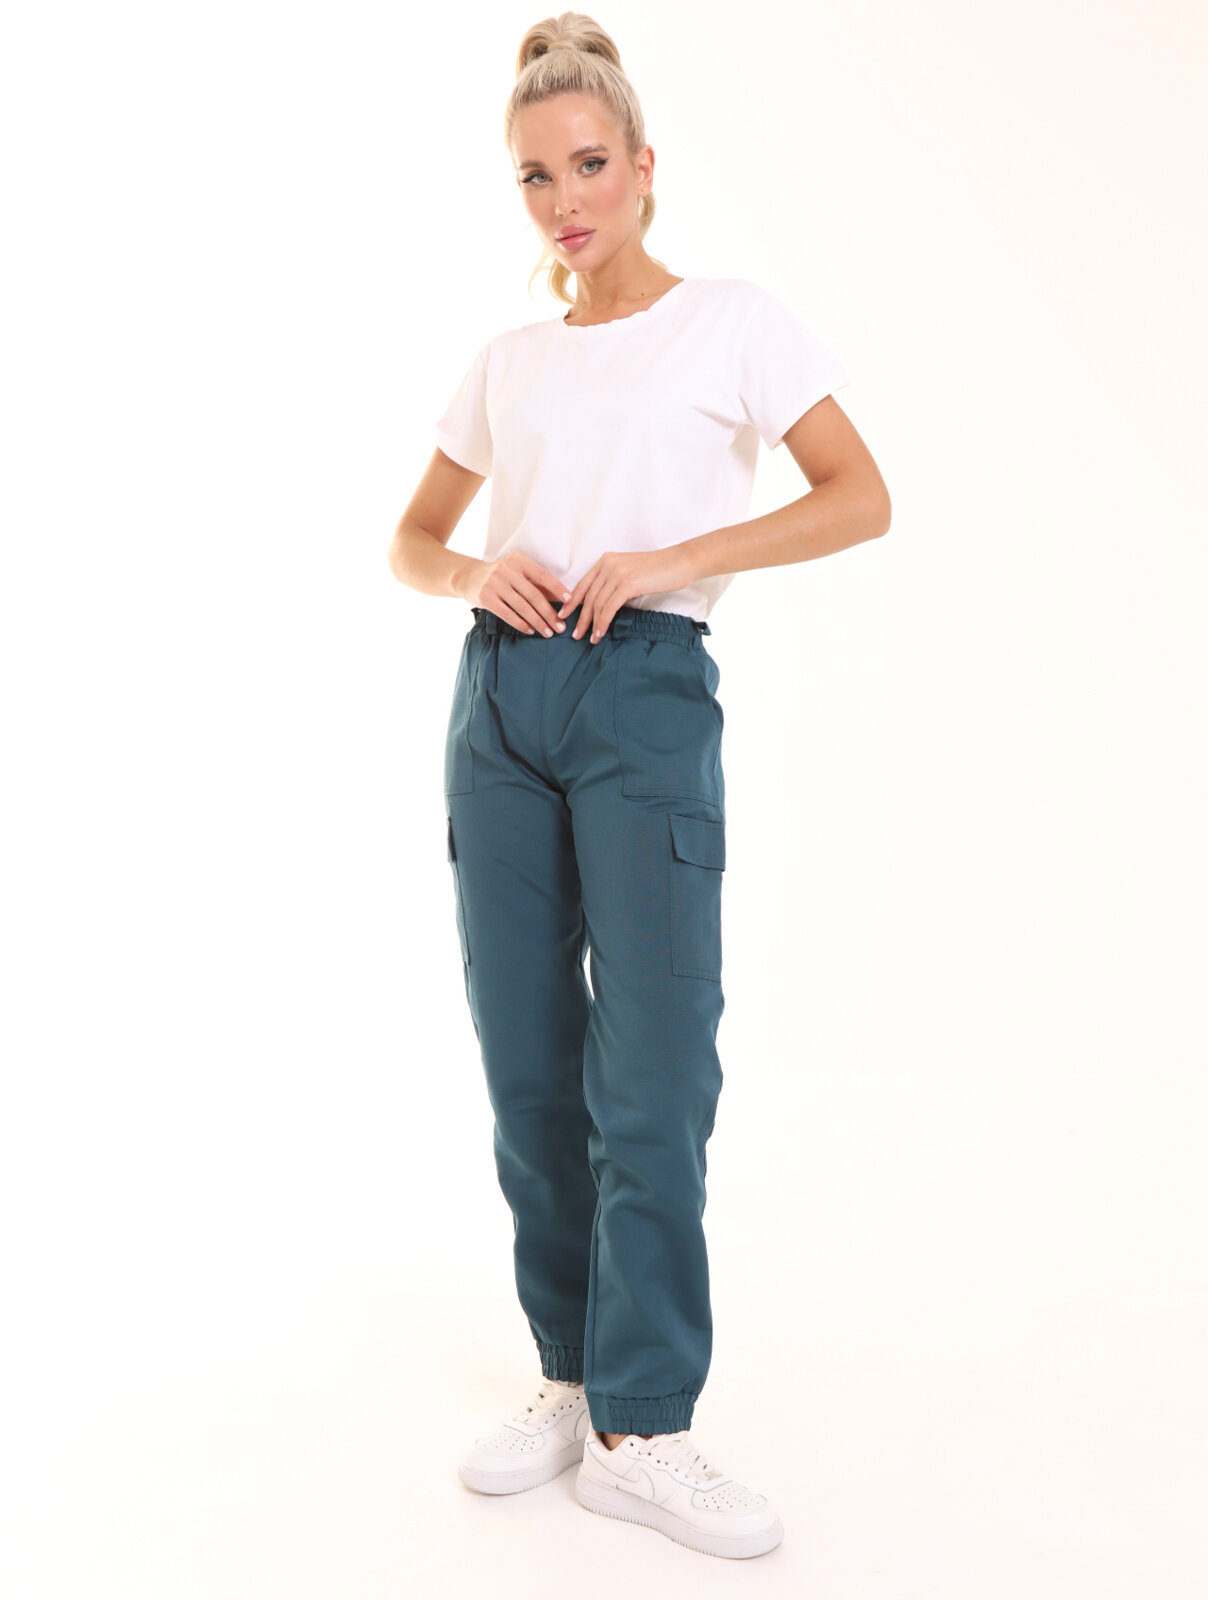 Женские рабочие брюки "Batkovski"размер 40-42 Цвет бирюзовый